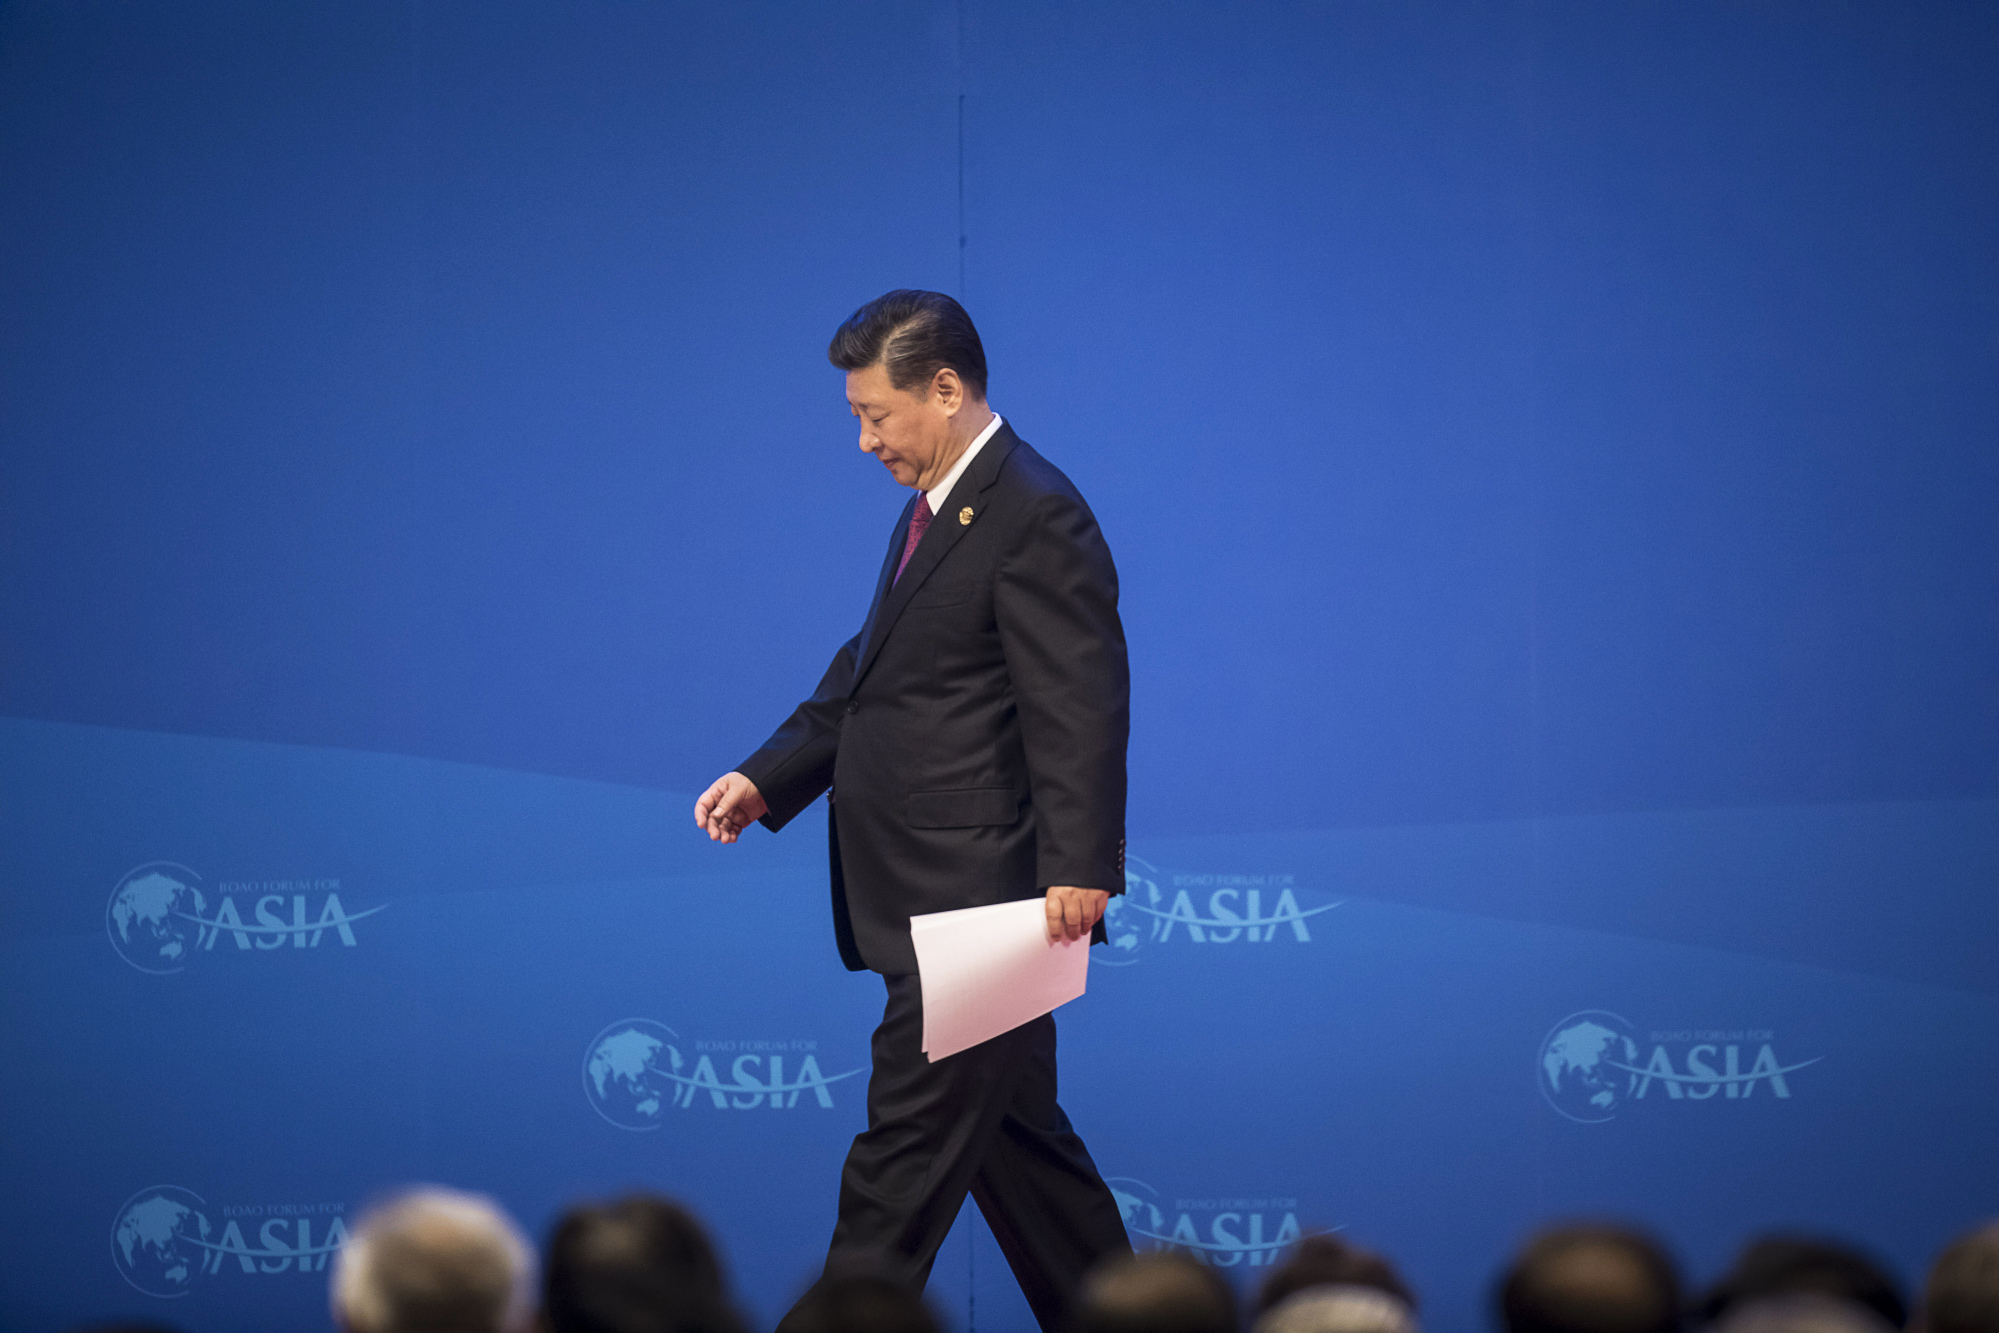 Xi Jinping, China's president.